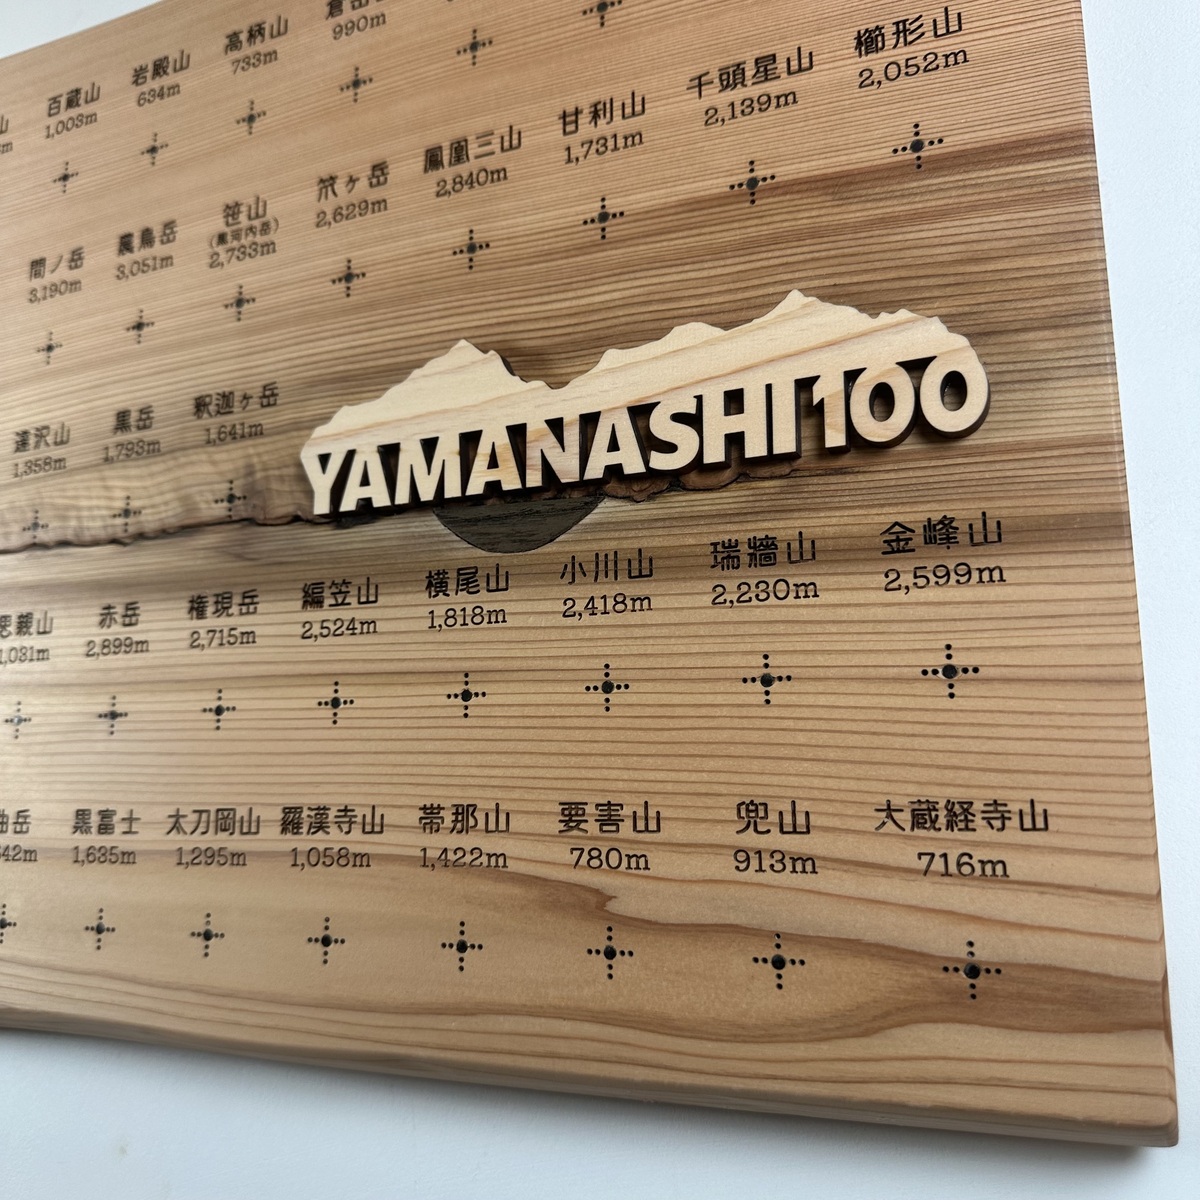 yamanashi-02